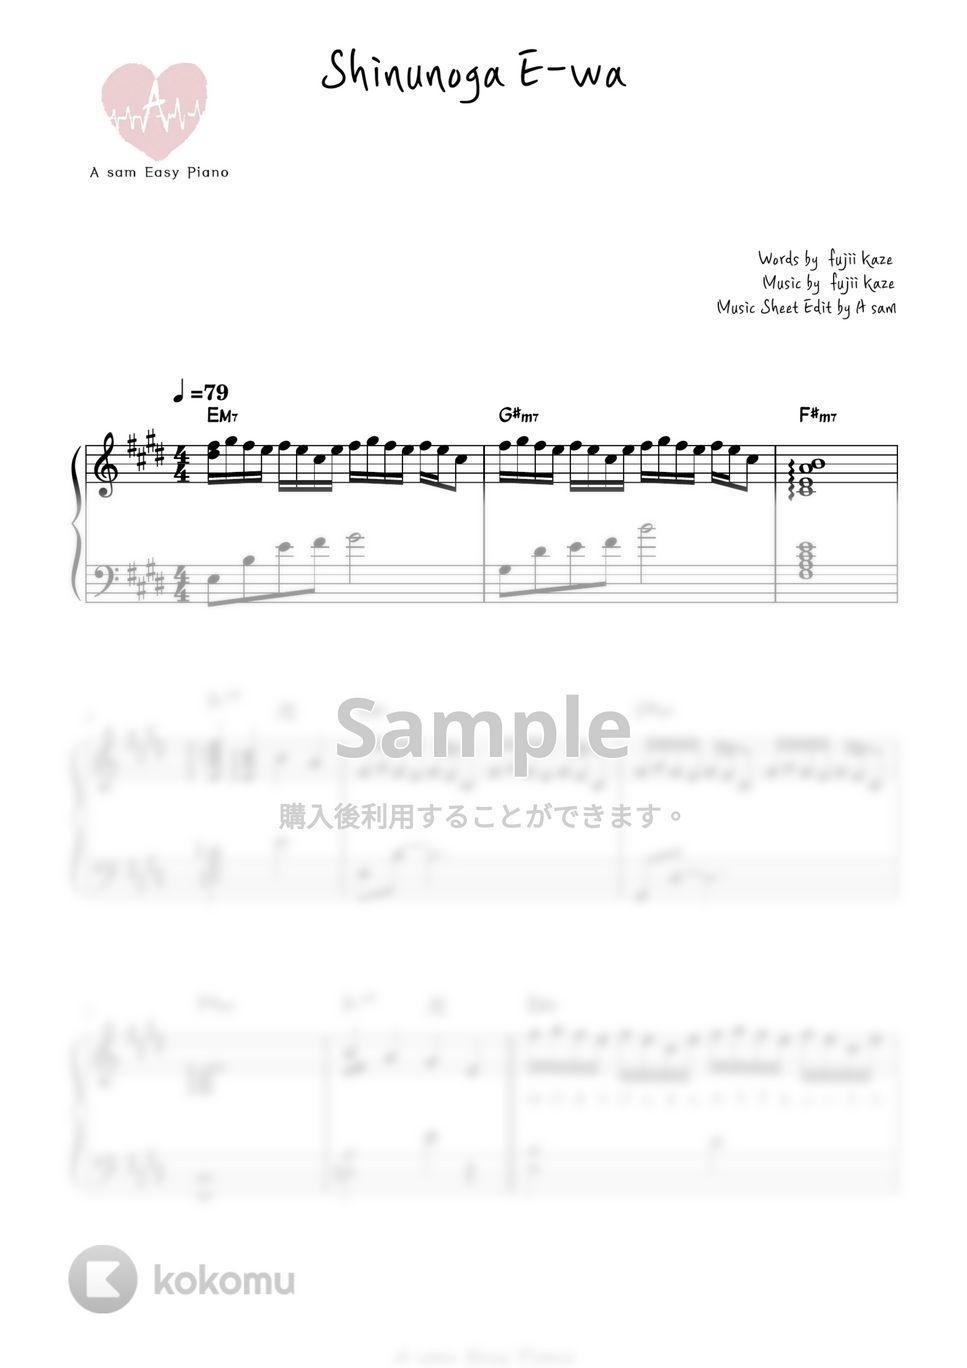 藤井風(Fujii Kaze) - 死ぬのがいいわ (ピアノ両手 / 上級 / 歌詞付き) by A-sam